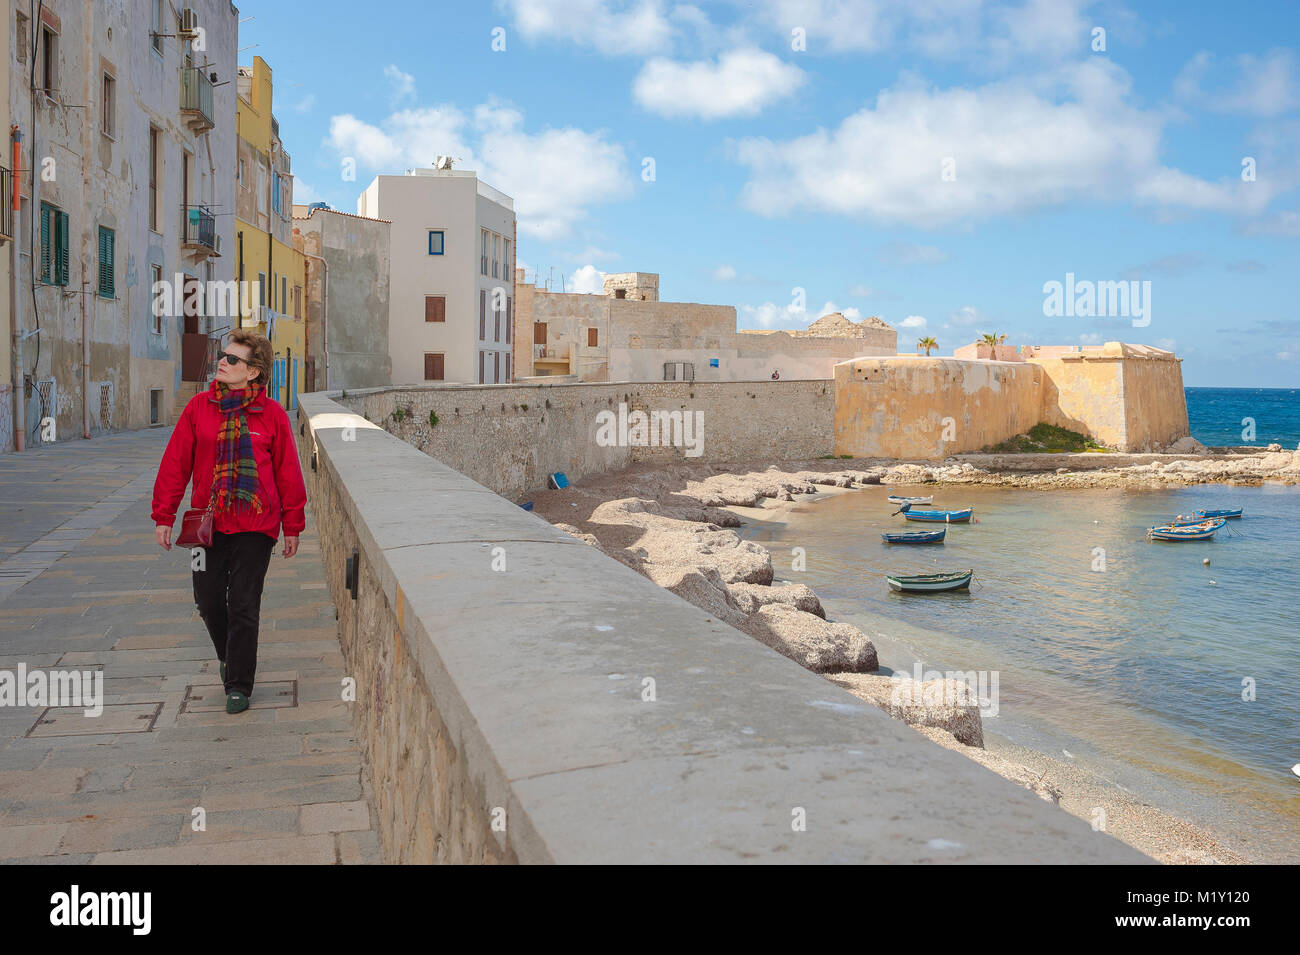 Frau solo Tourist allein Konzept, Blick auf eine reife Frau Reisende zu Fuß entlang der Meeresmauer am Nordufer von Trapani, Sizilien. [MODELL FREIGEGEBEN] Stockfoto